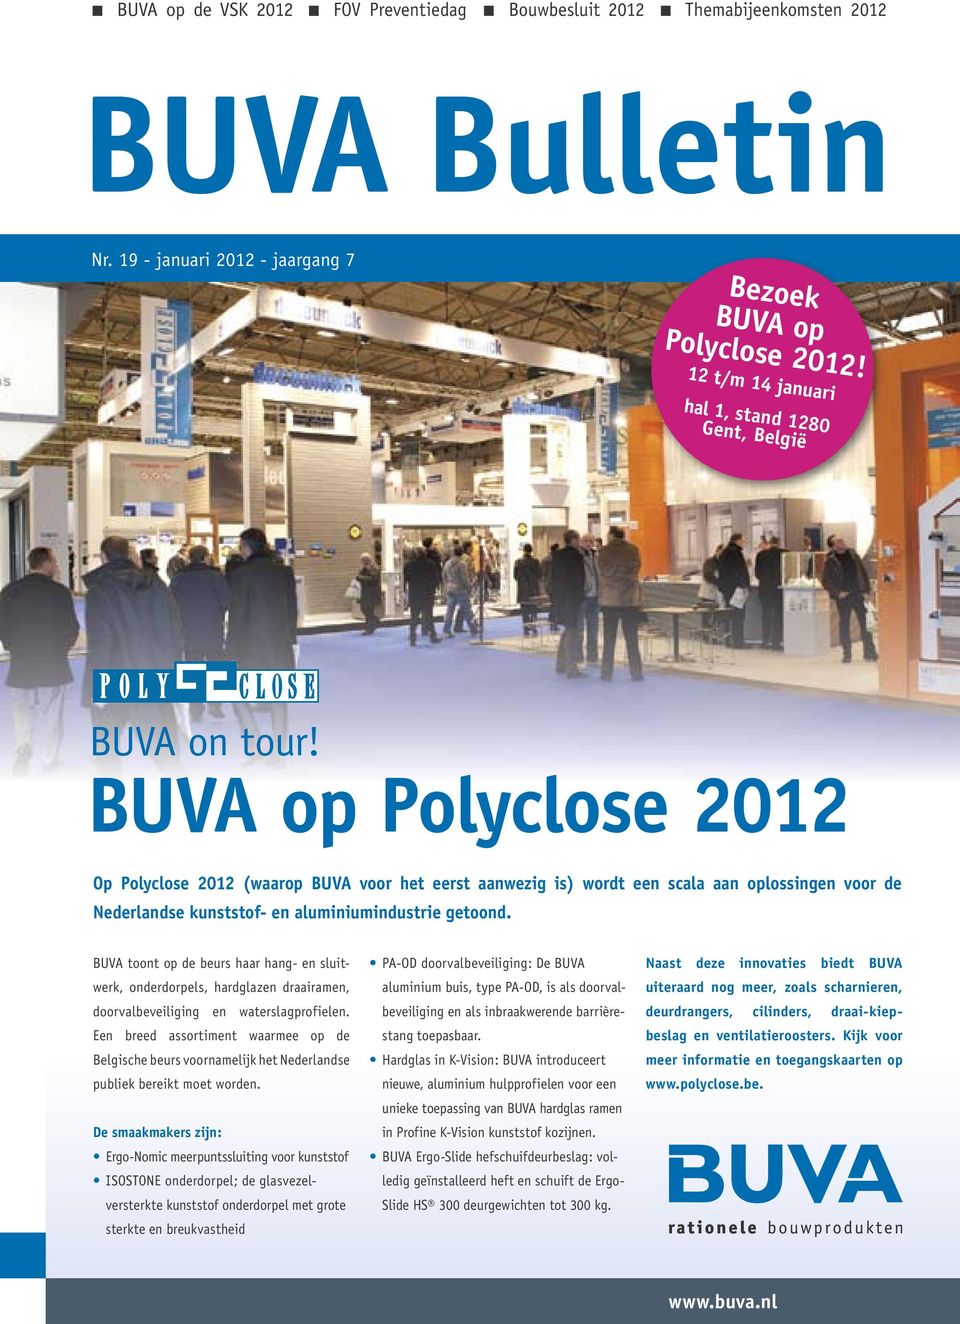 BUVA op Polyclose 2012 Op Polyclose 2012 (waarop BUVA voor het eerst aanwezig is) wordt een scala aan oplossingen voor de Nederlandse kunststof- en aluminiumindustrie getoond.